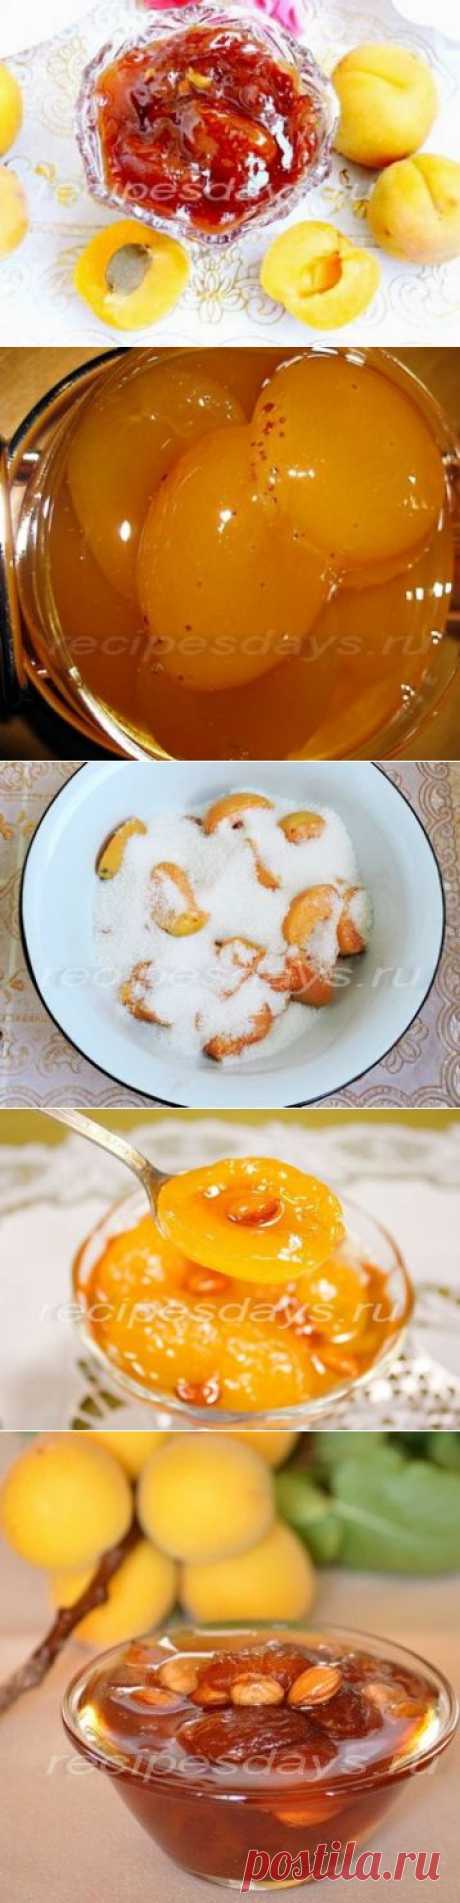 Как приготовить абрикосовое варенье | Рецепты дня